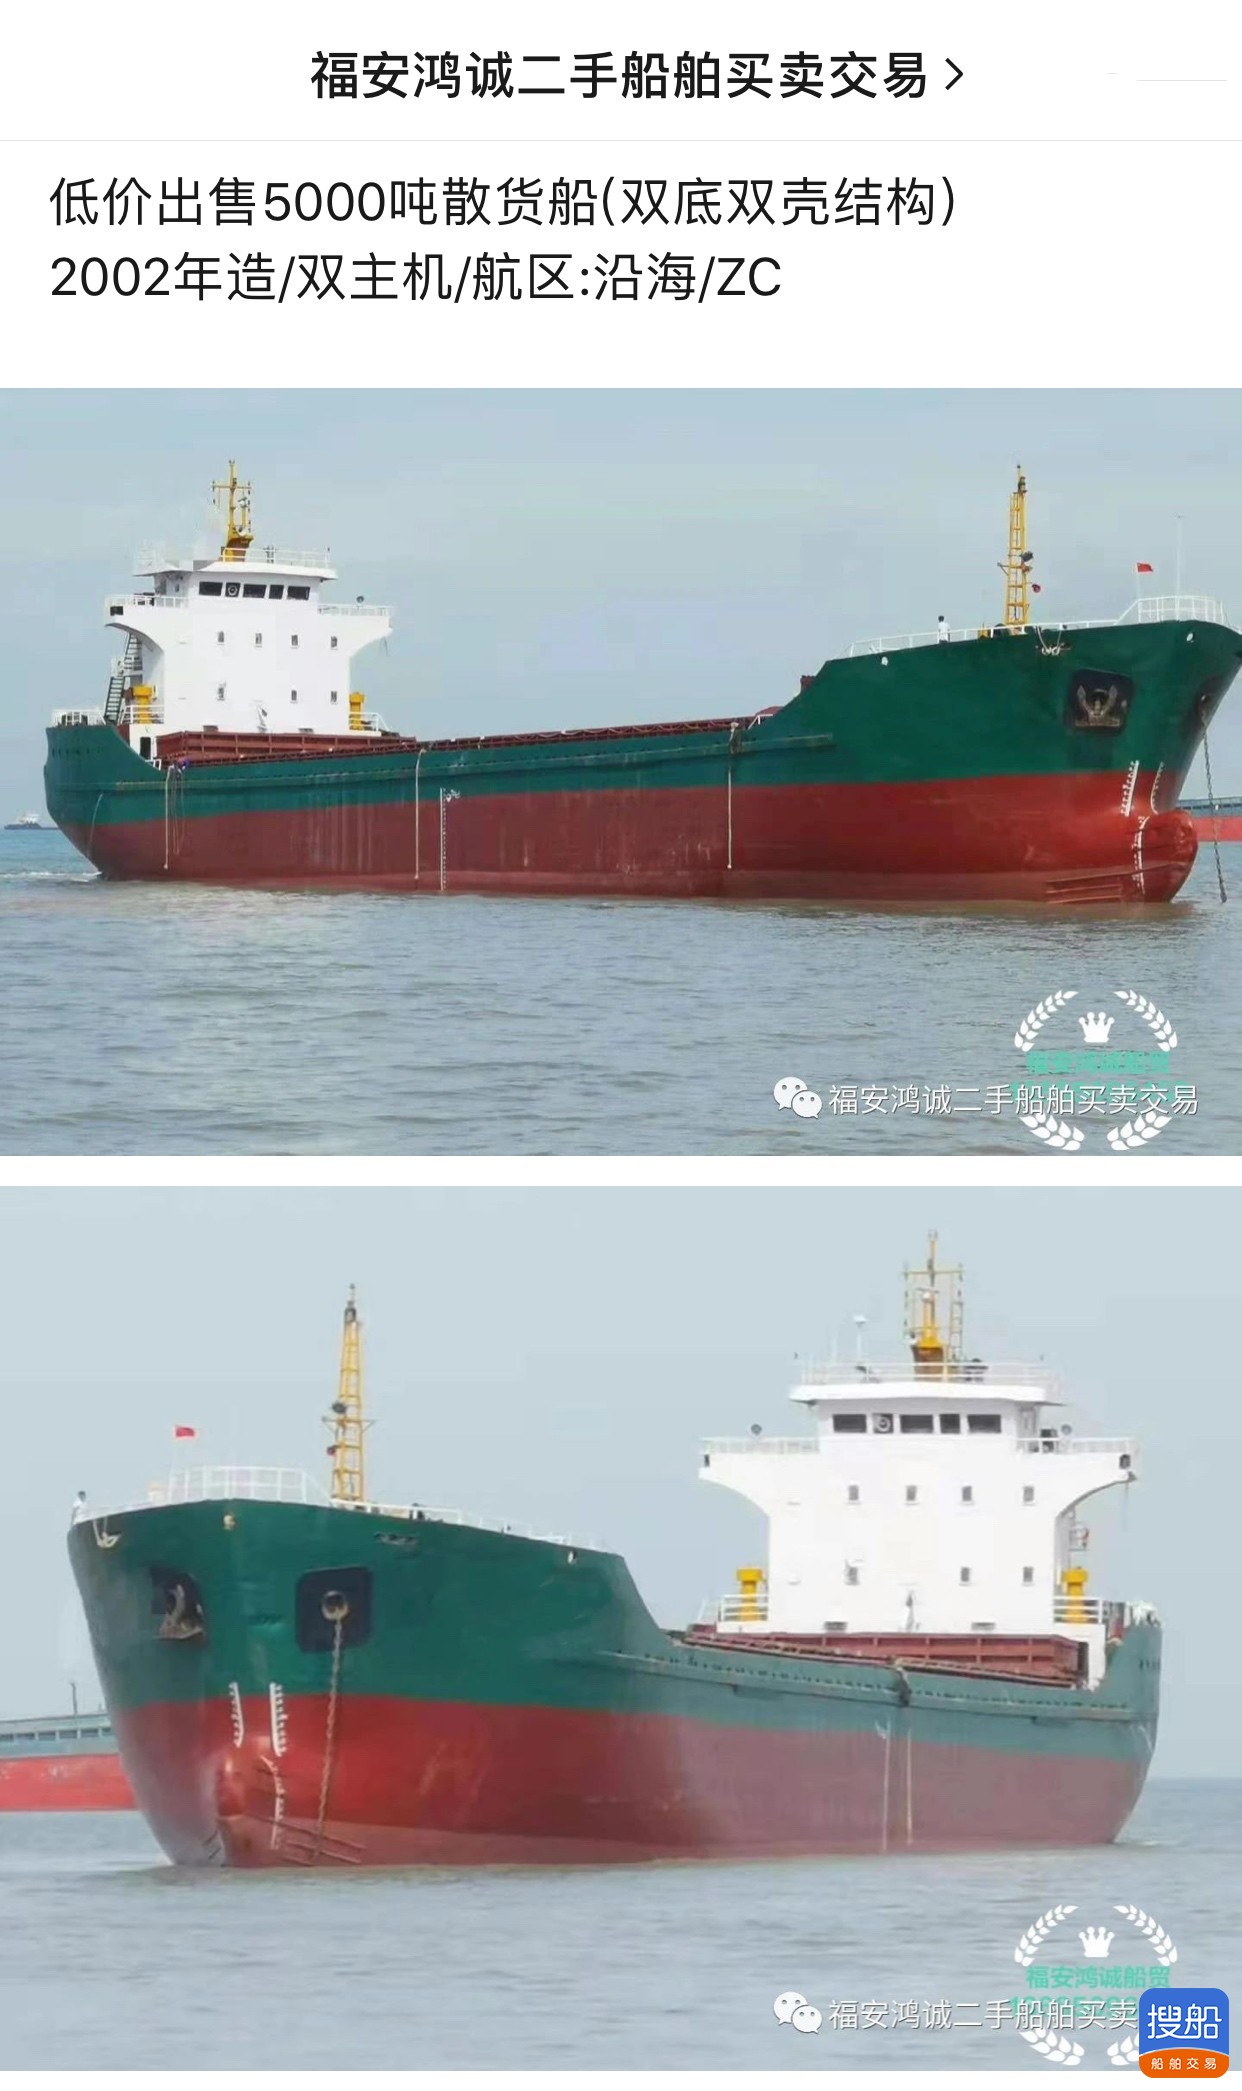 低价出售5000吨双壳散货船